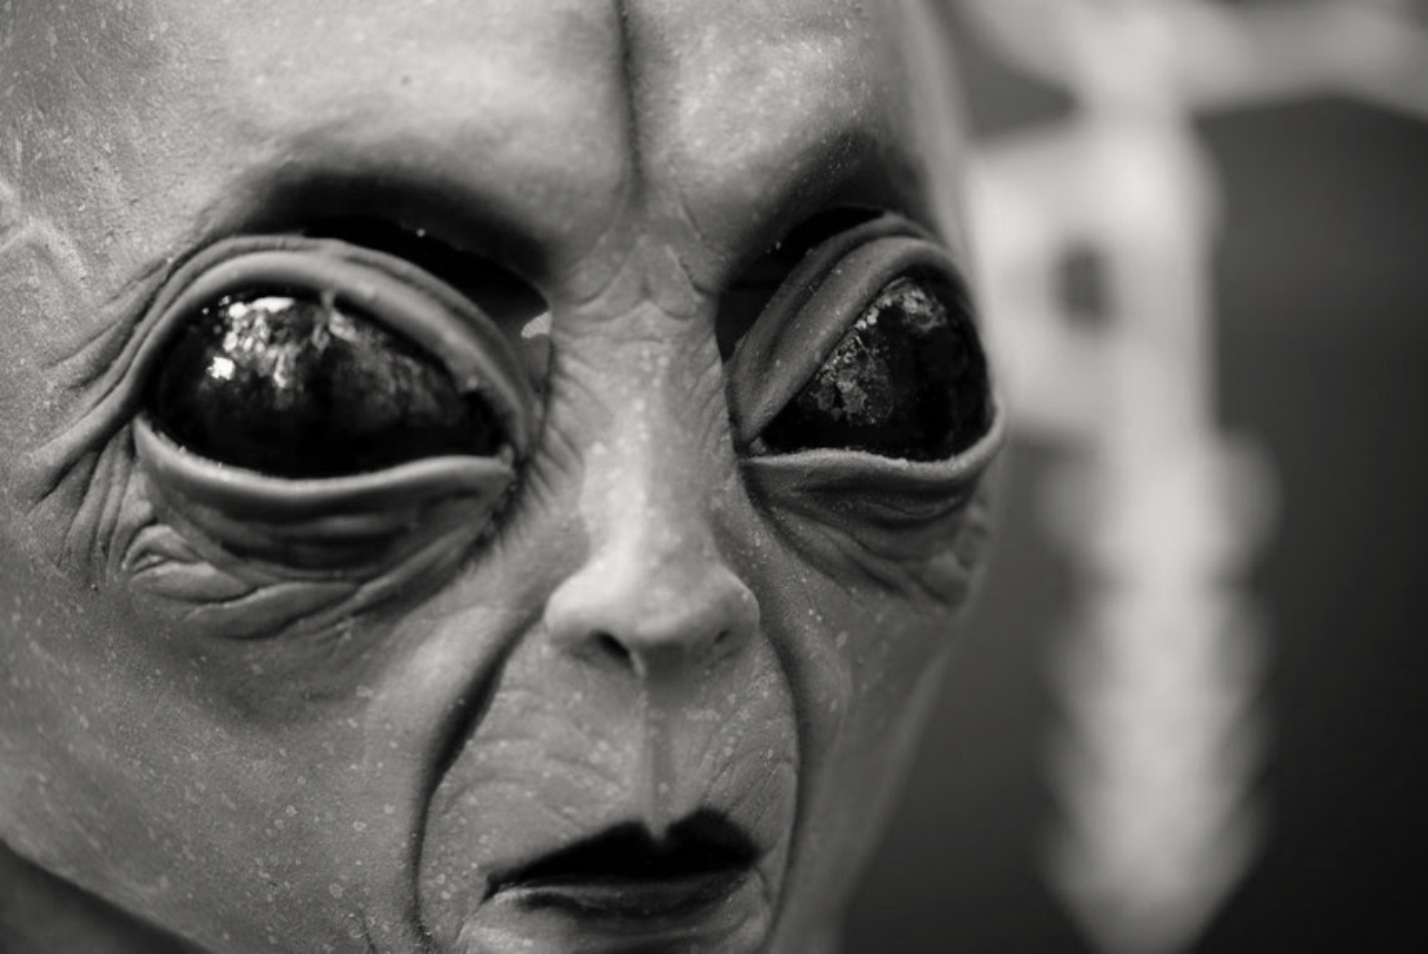 Project Serpo: The secret exchange between aliens and humans 1